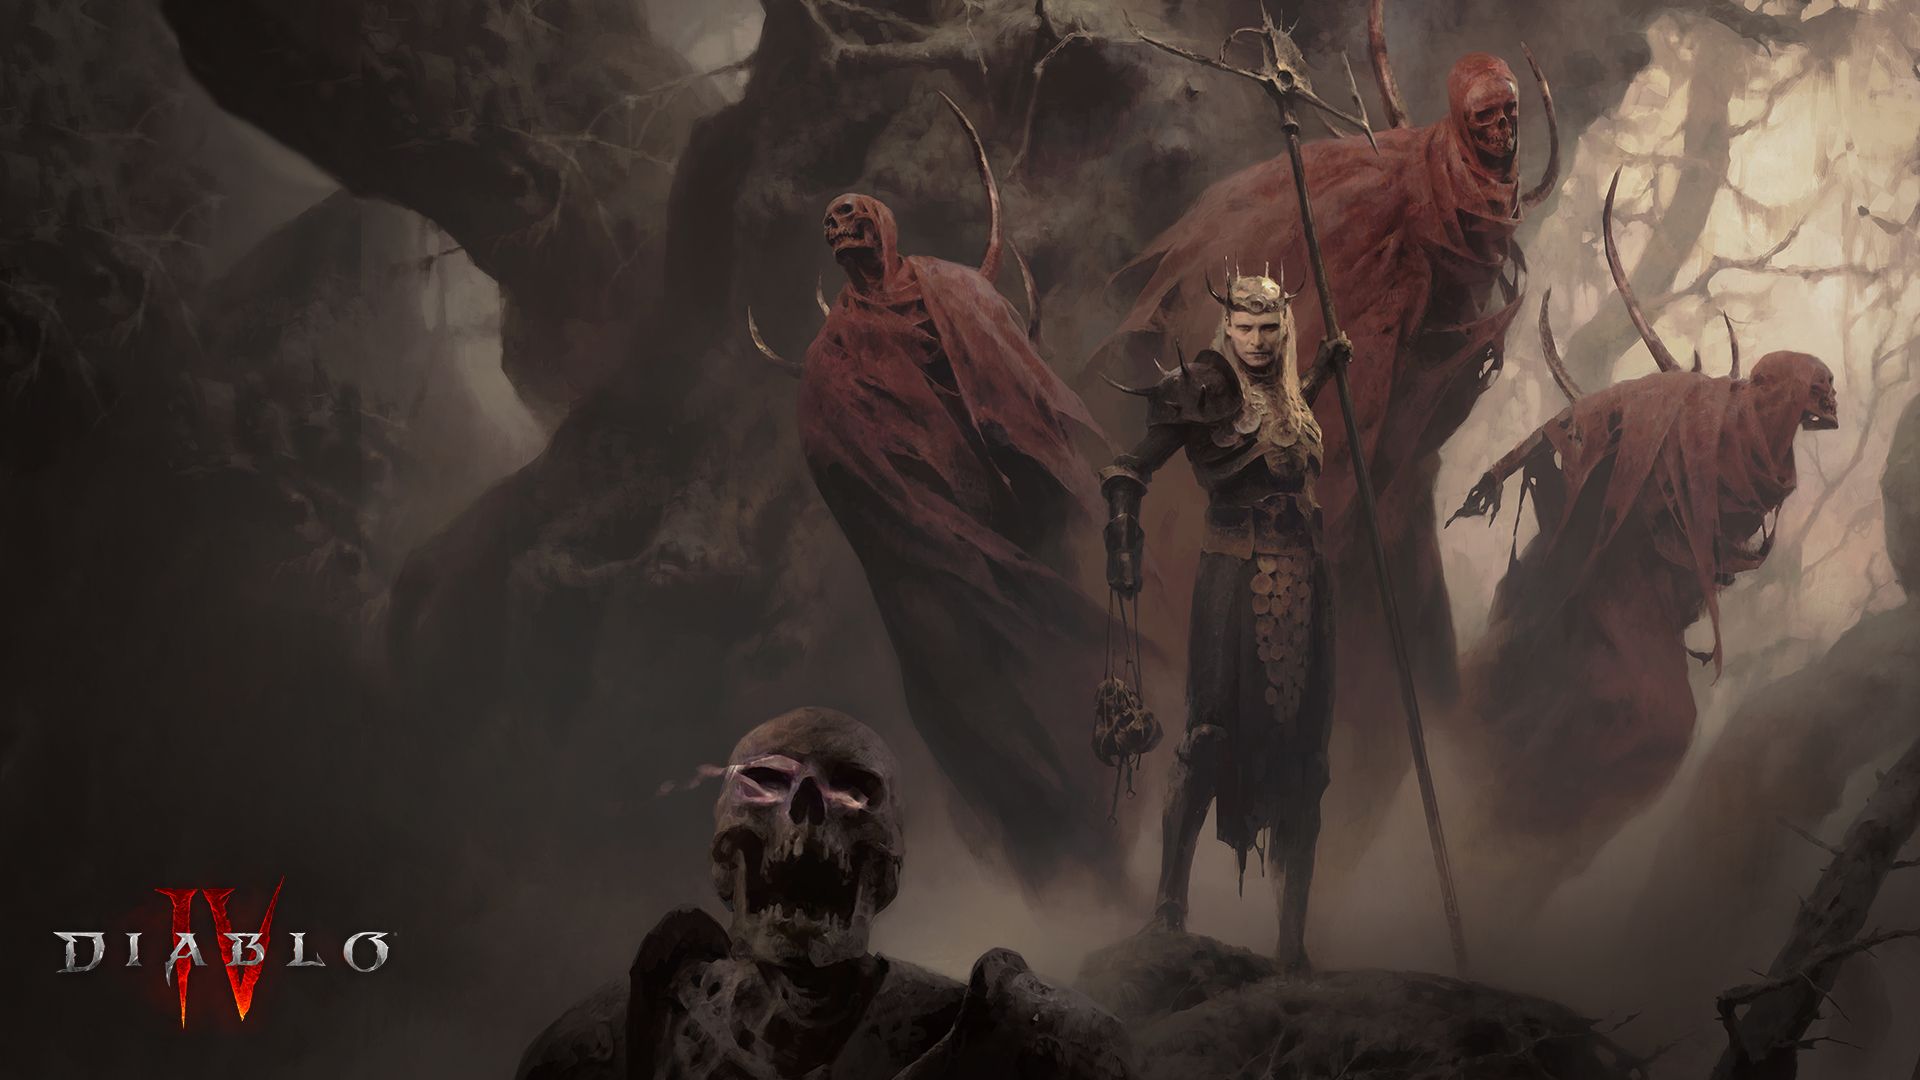 La saison 4 pourra-t-elle enfin sauver Diablo 4 ? Les fans sont hypés, mais il y a encore des problèmes...